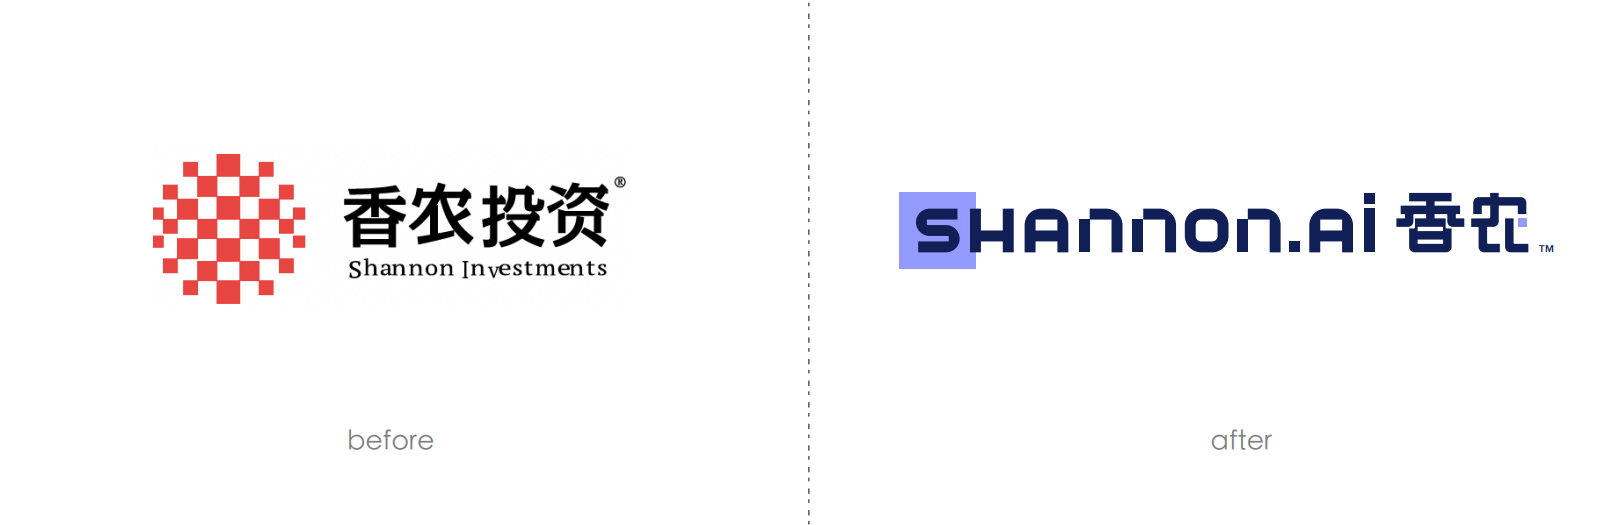 聚焦AI智能决策 SHannon.ai香农基金品牌升级